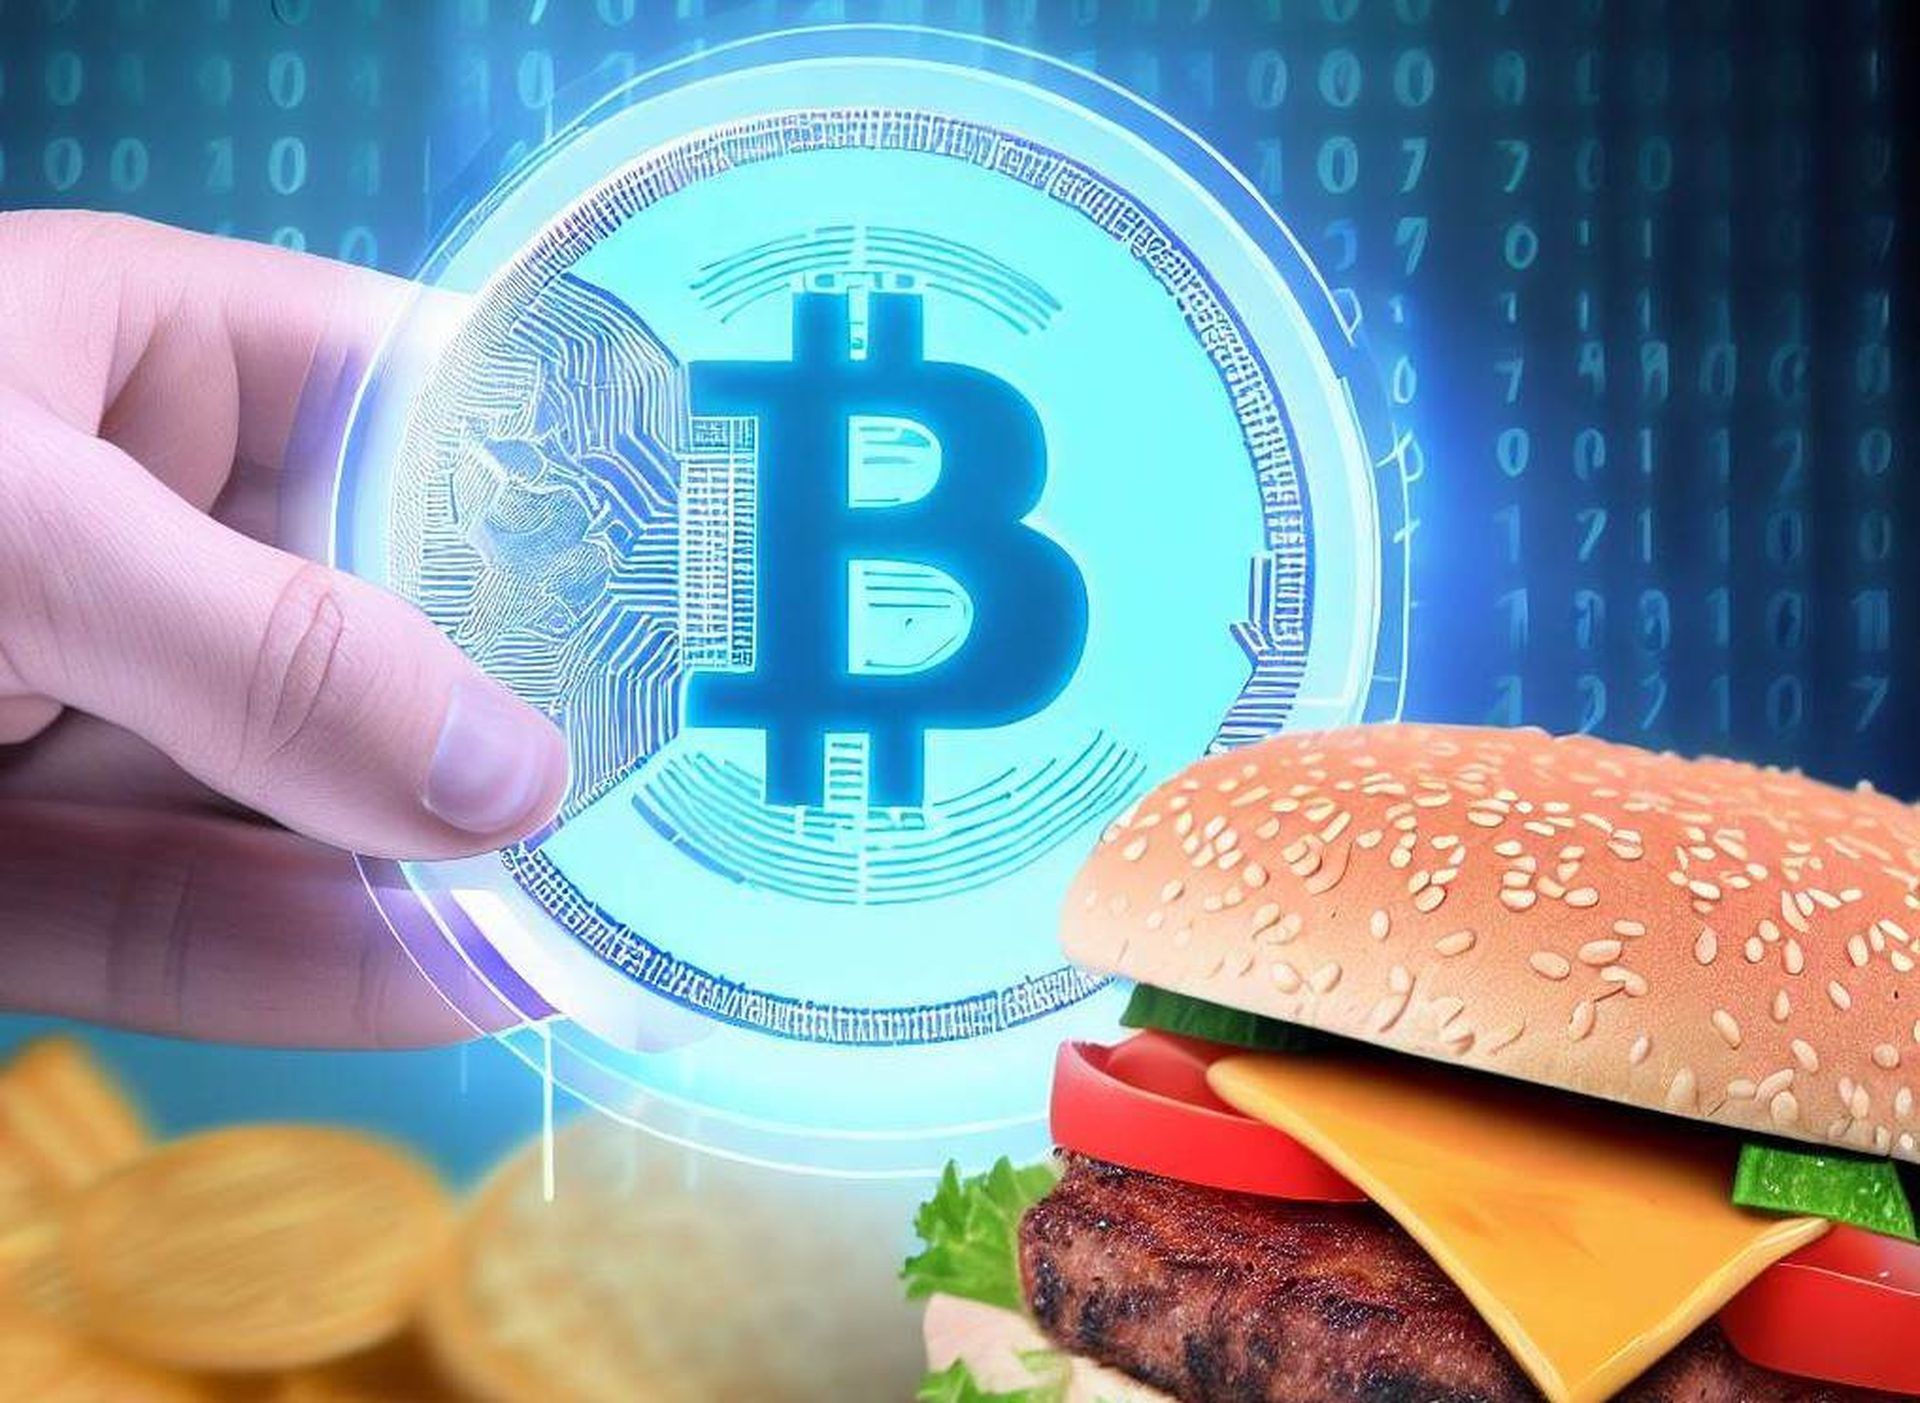 Jetzt können Sie bei Burger King mit Bitcoin bezahlen: So geht’s